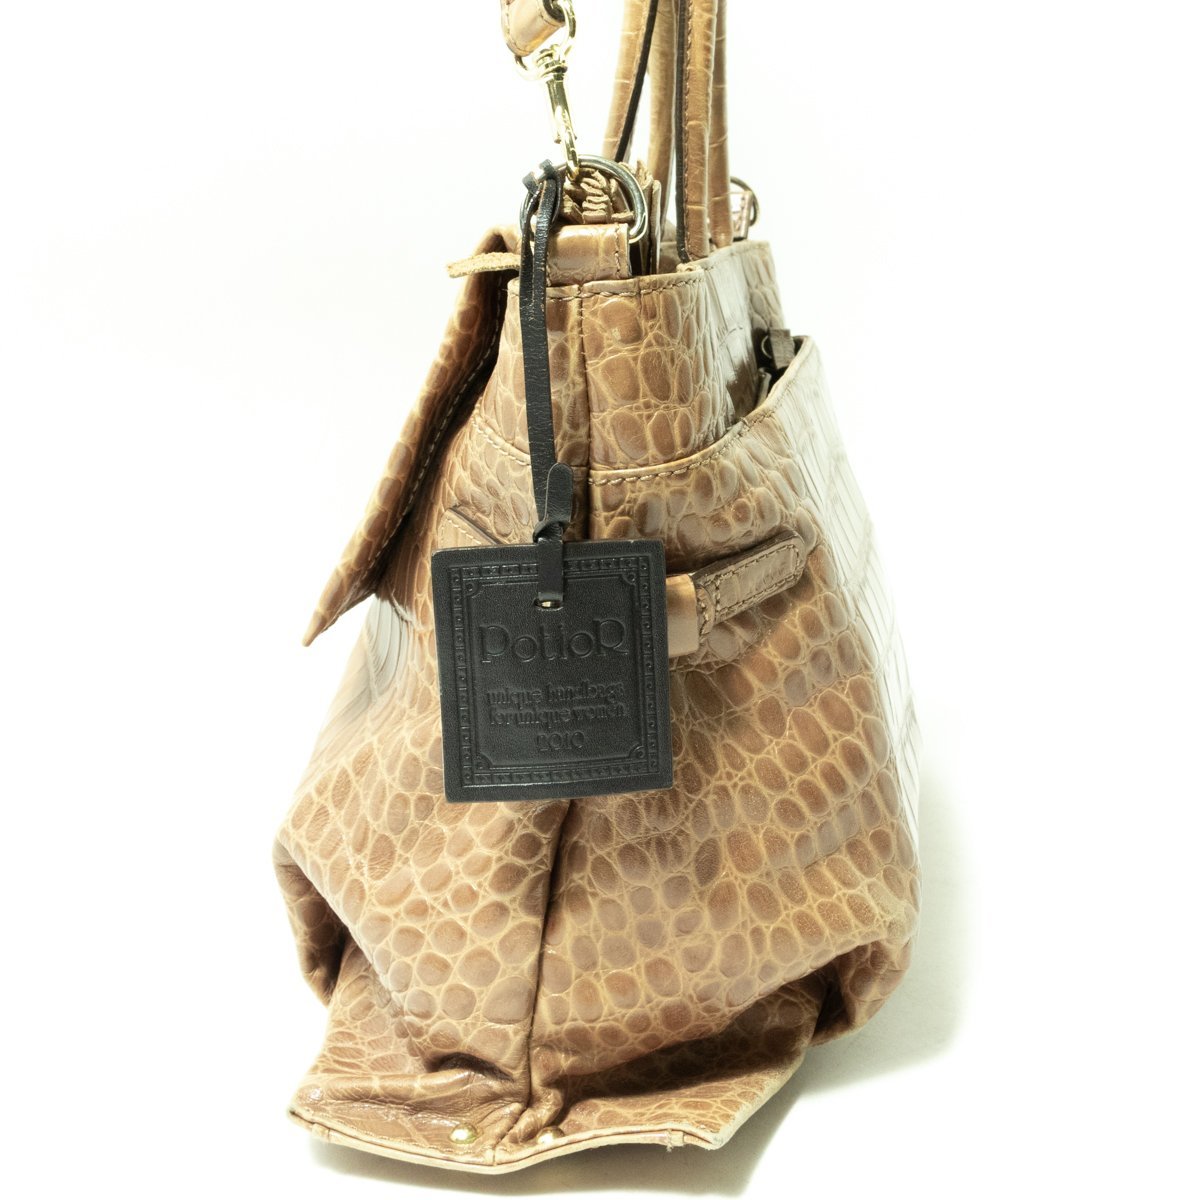 PotioR ポティオール クロコダイル型押しバッグ ハンドバッグ ショルダーバッグ 2way カーキベージュ系 牛革 レザー ゴールド金具 鞄 bag